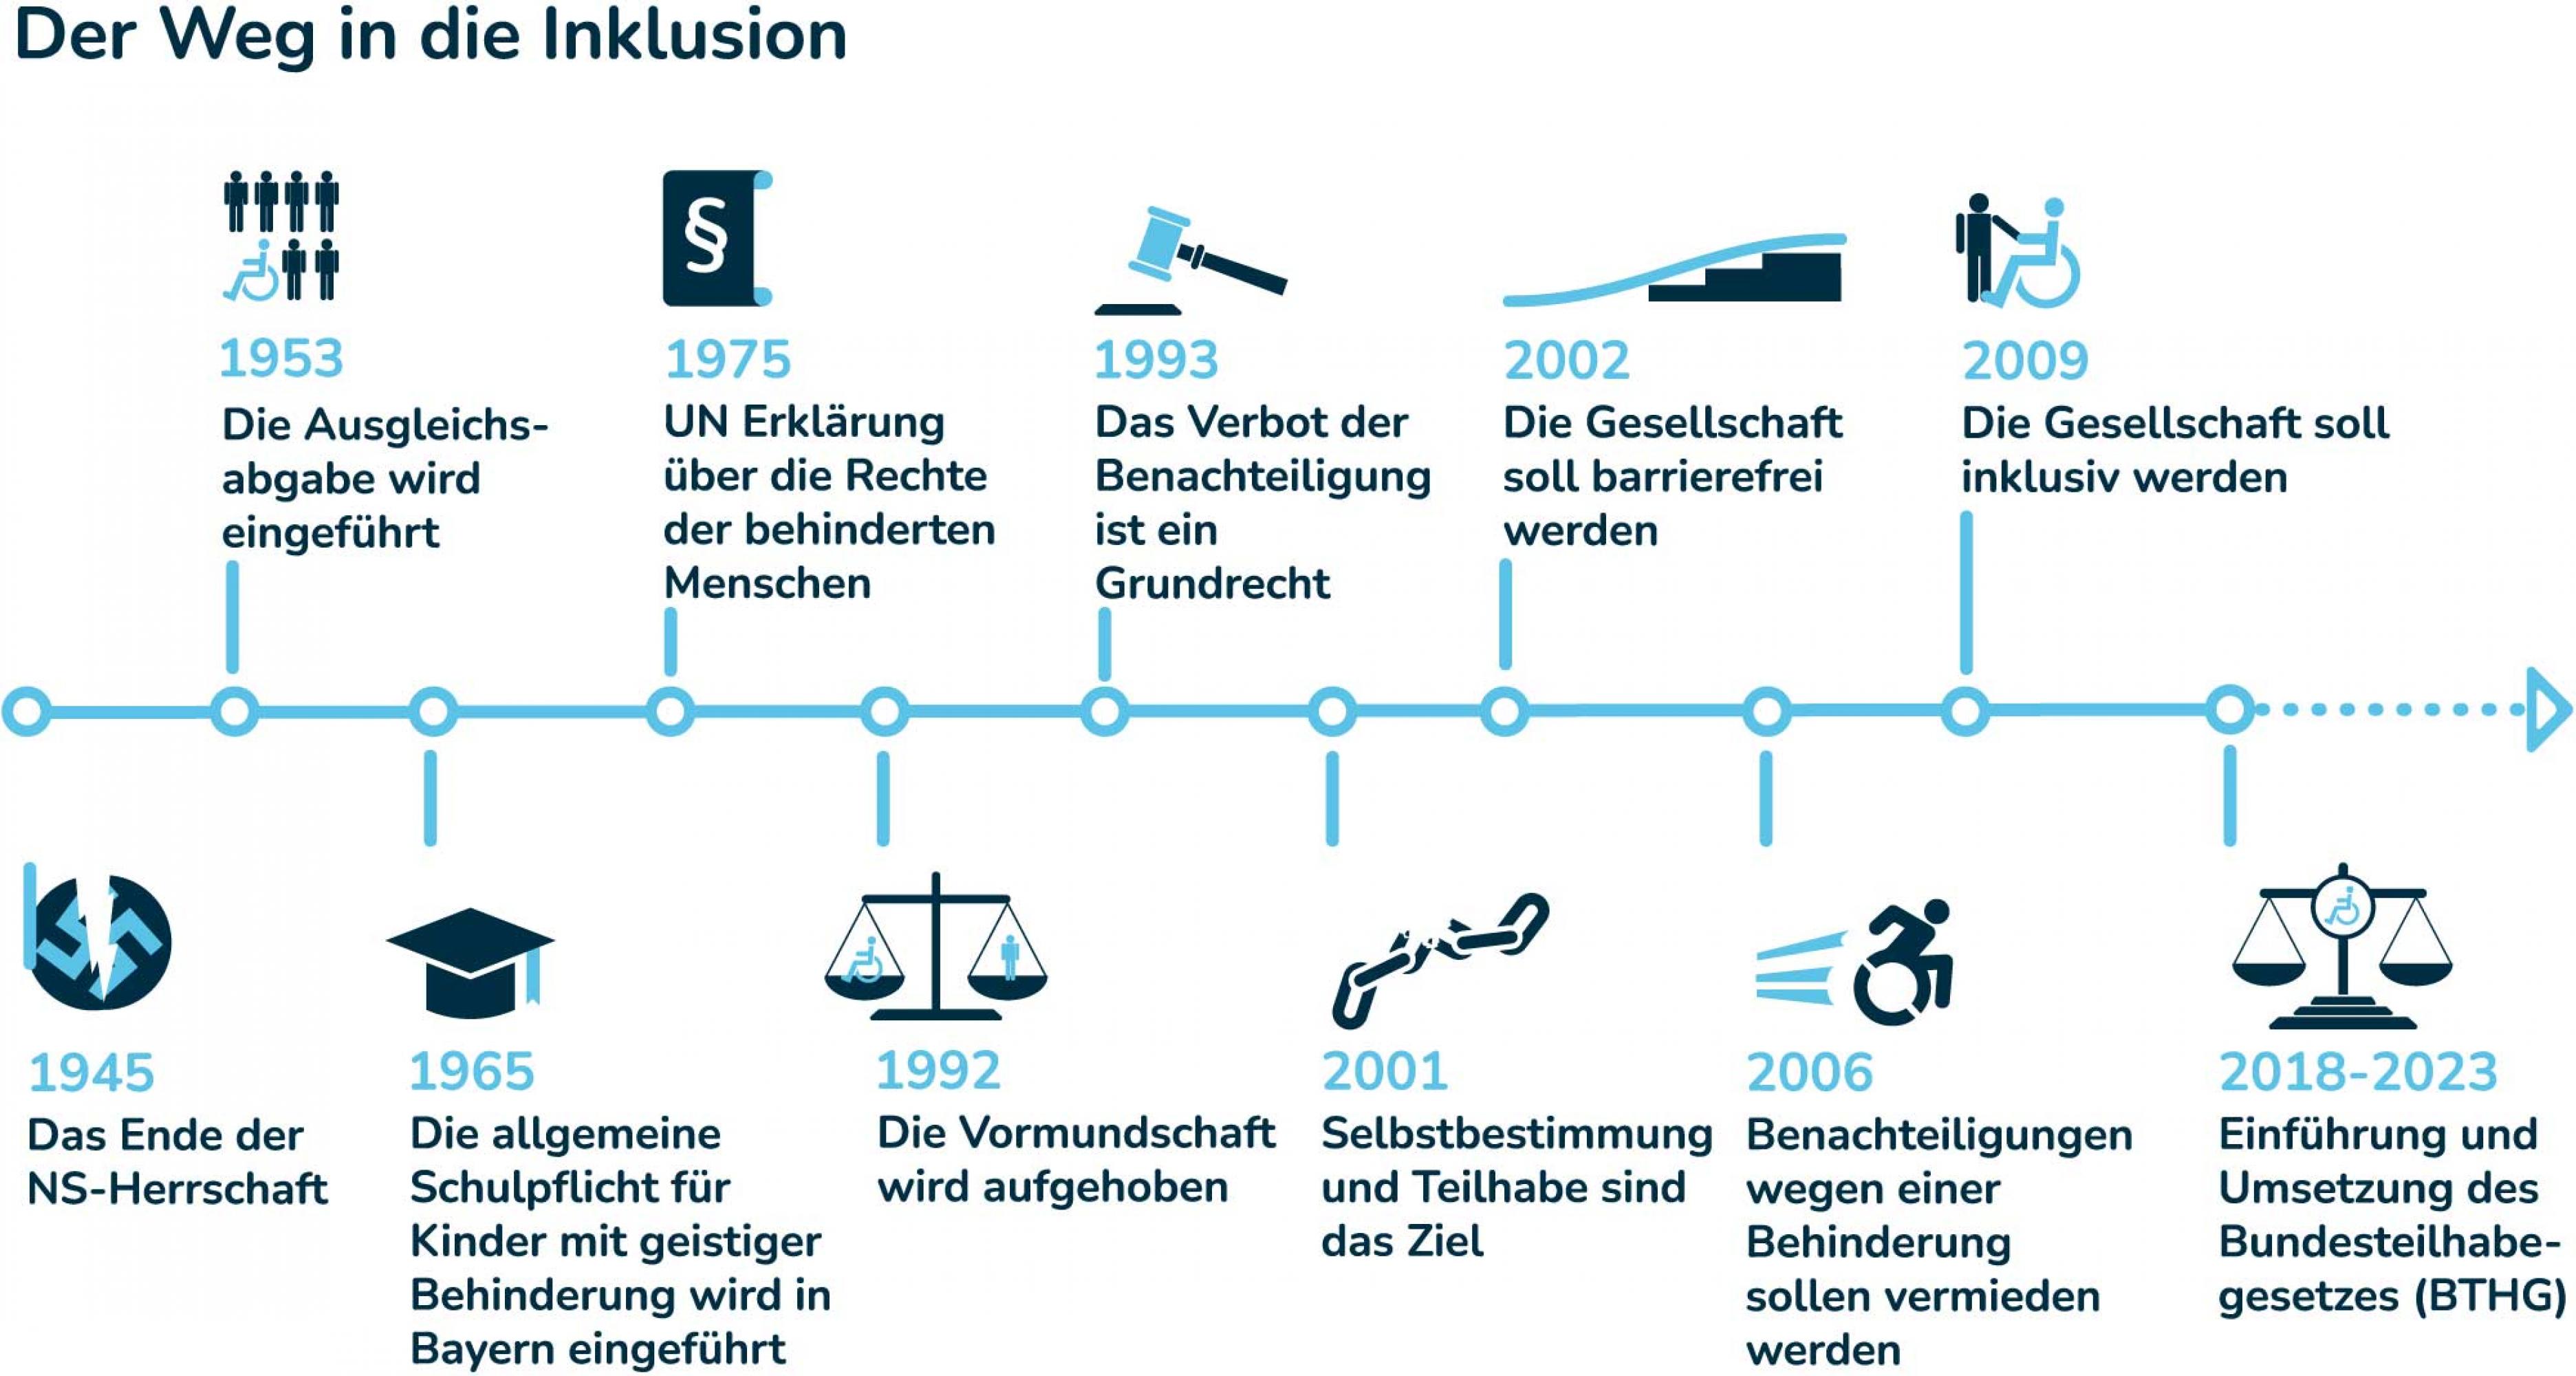 Die Infografik zeigt auf einer Zeitschiene die historische Entwicklung der Rechte für Menschen mit Behinderung in Deutschland seit 1945.